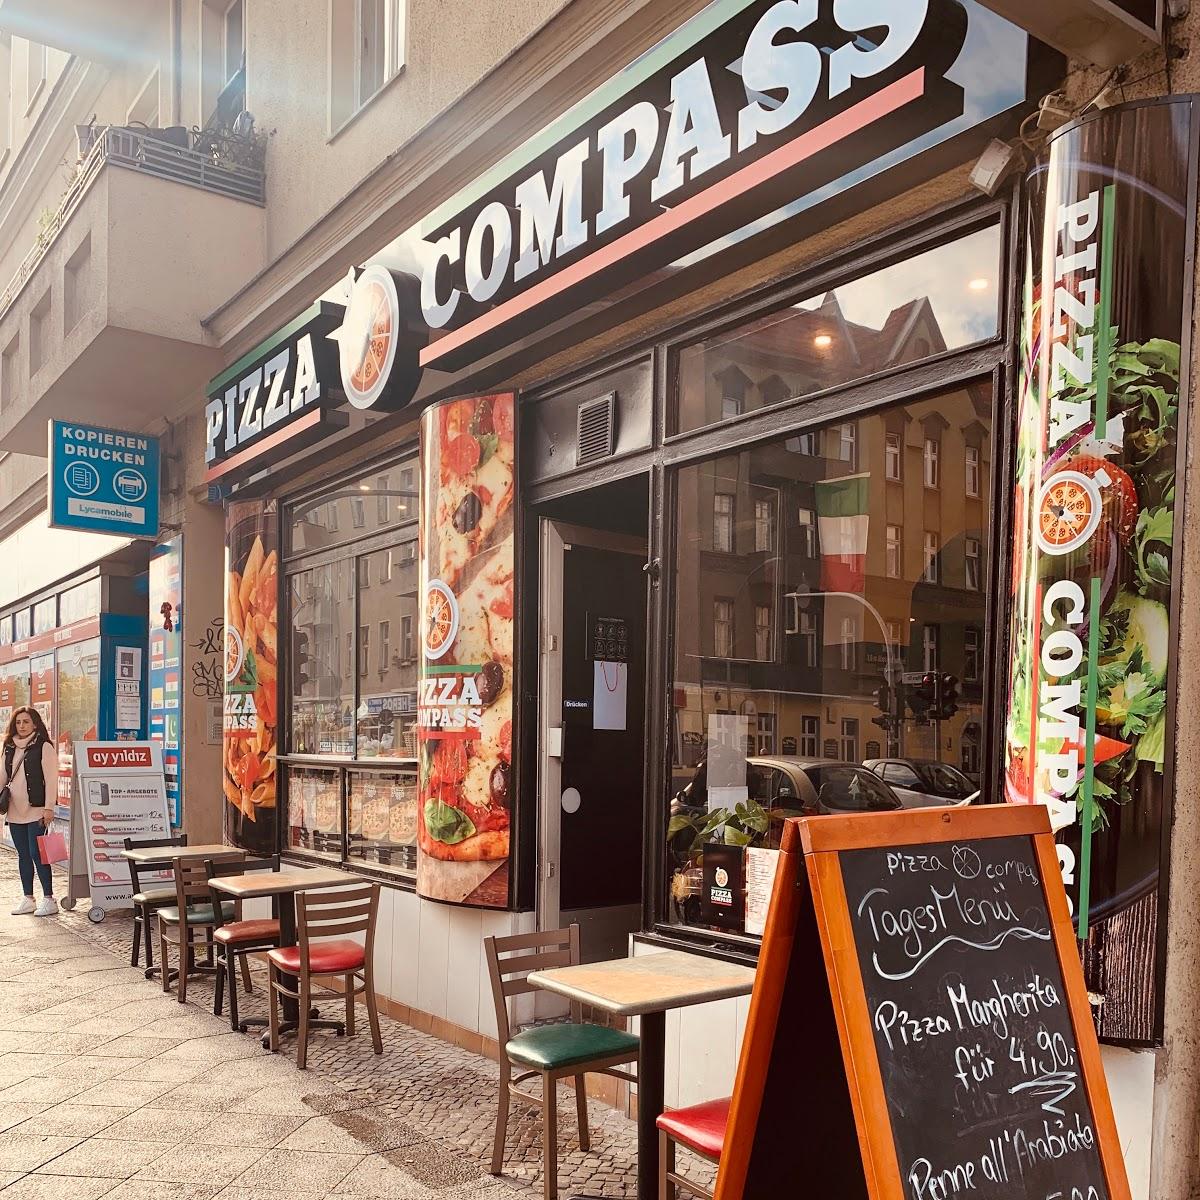 Restaurant "PIZZA COMPASS" in Berlin